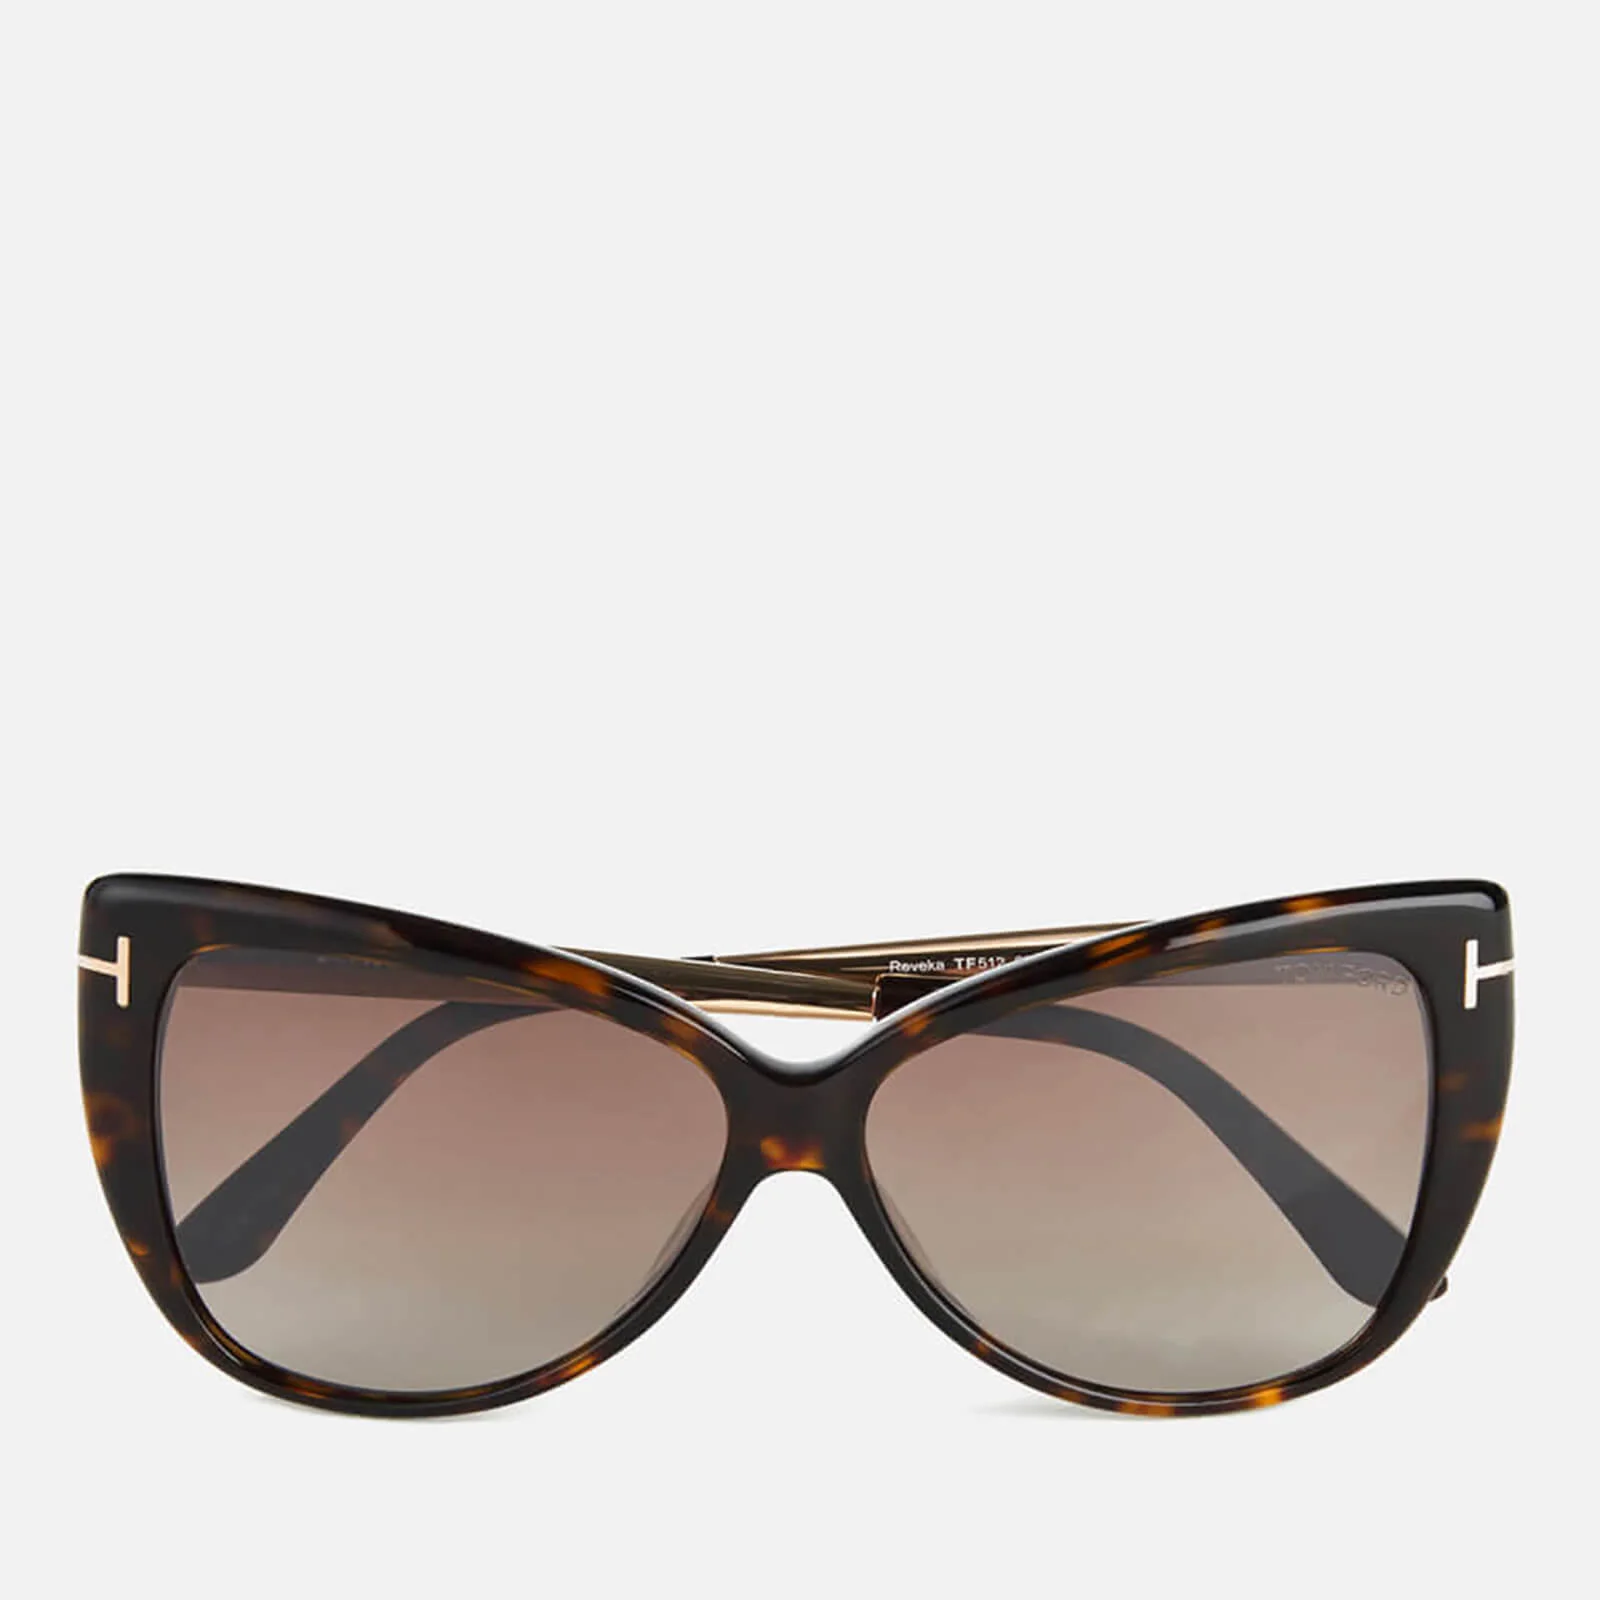 Tom Ford Women's Reveka Sunglasses - Tortoise Shell Image 1